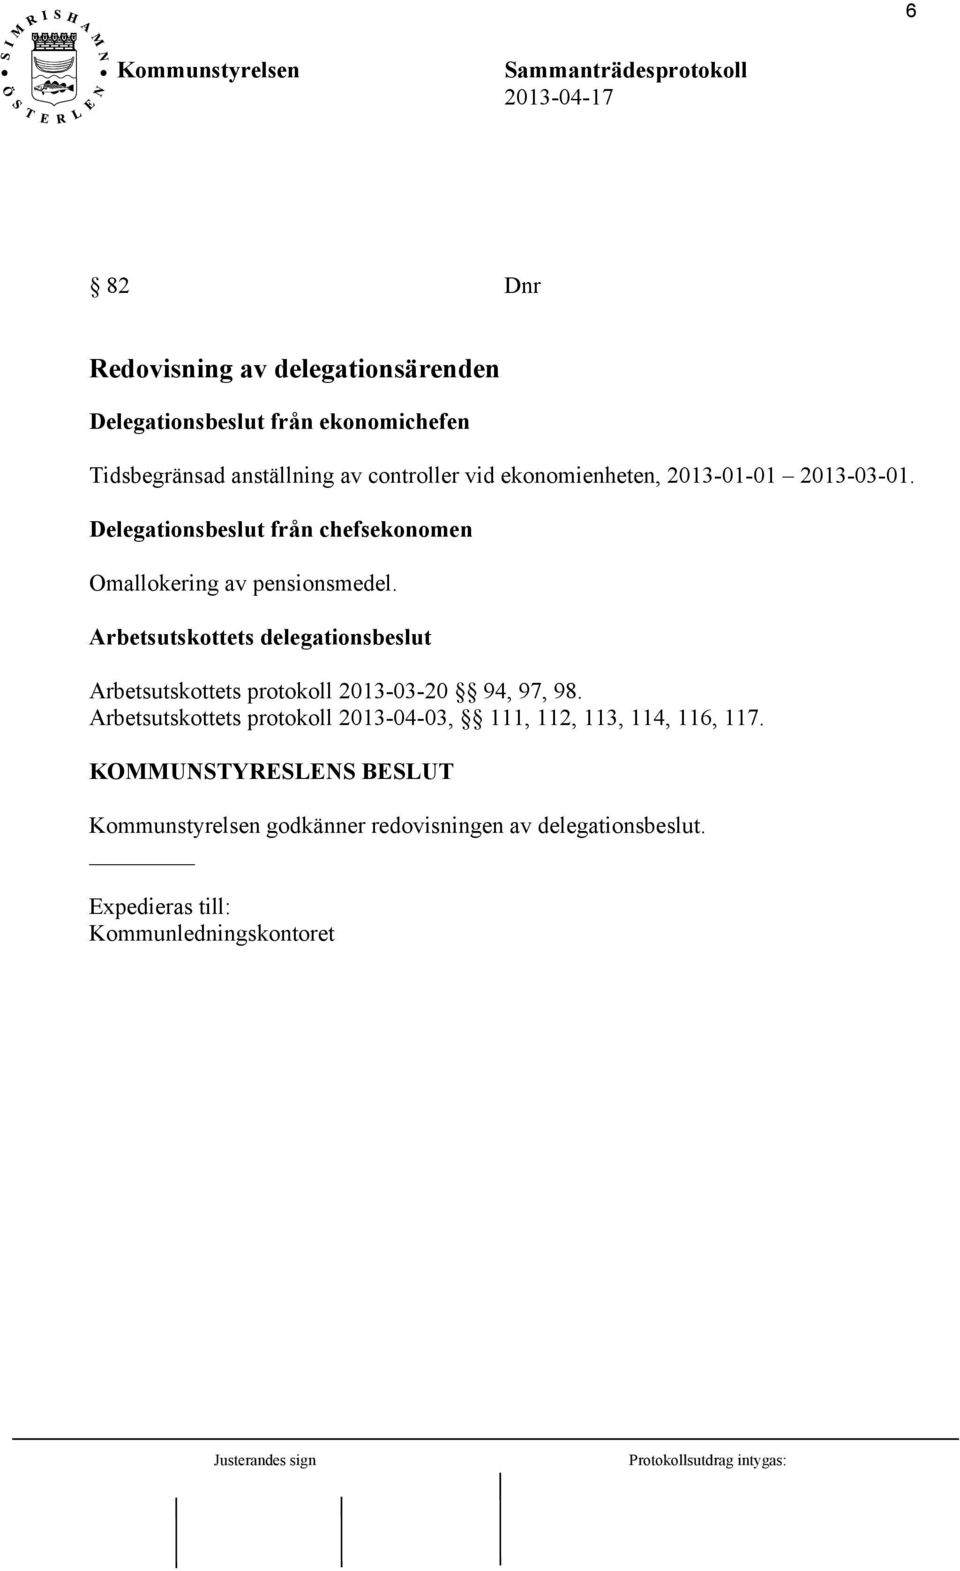 Arbetsutskottets delegationsbeslut Arbetsutskottets protokoll 2013-03-20 94, 97, 98.